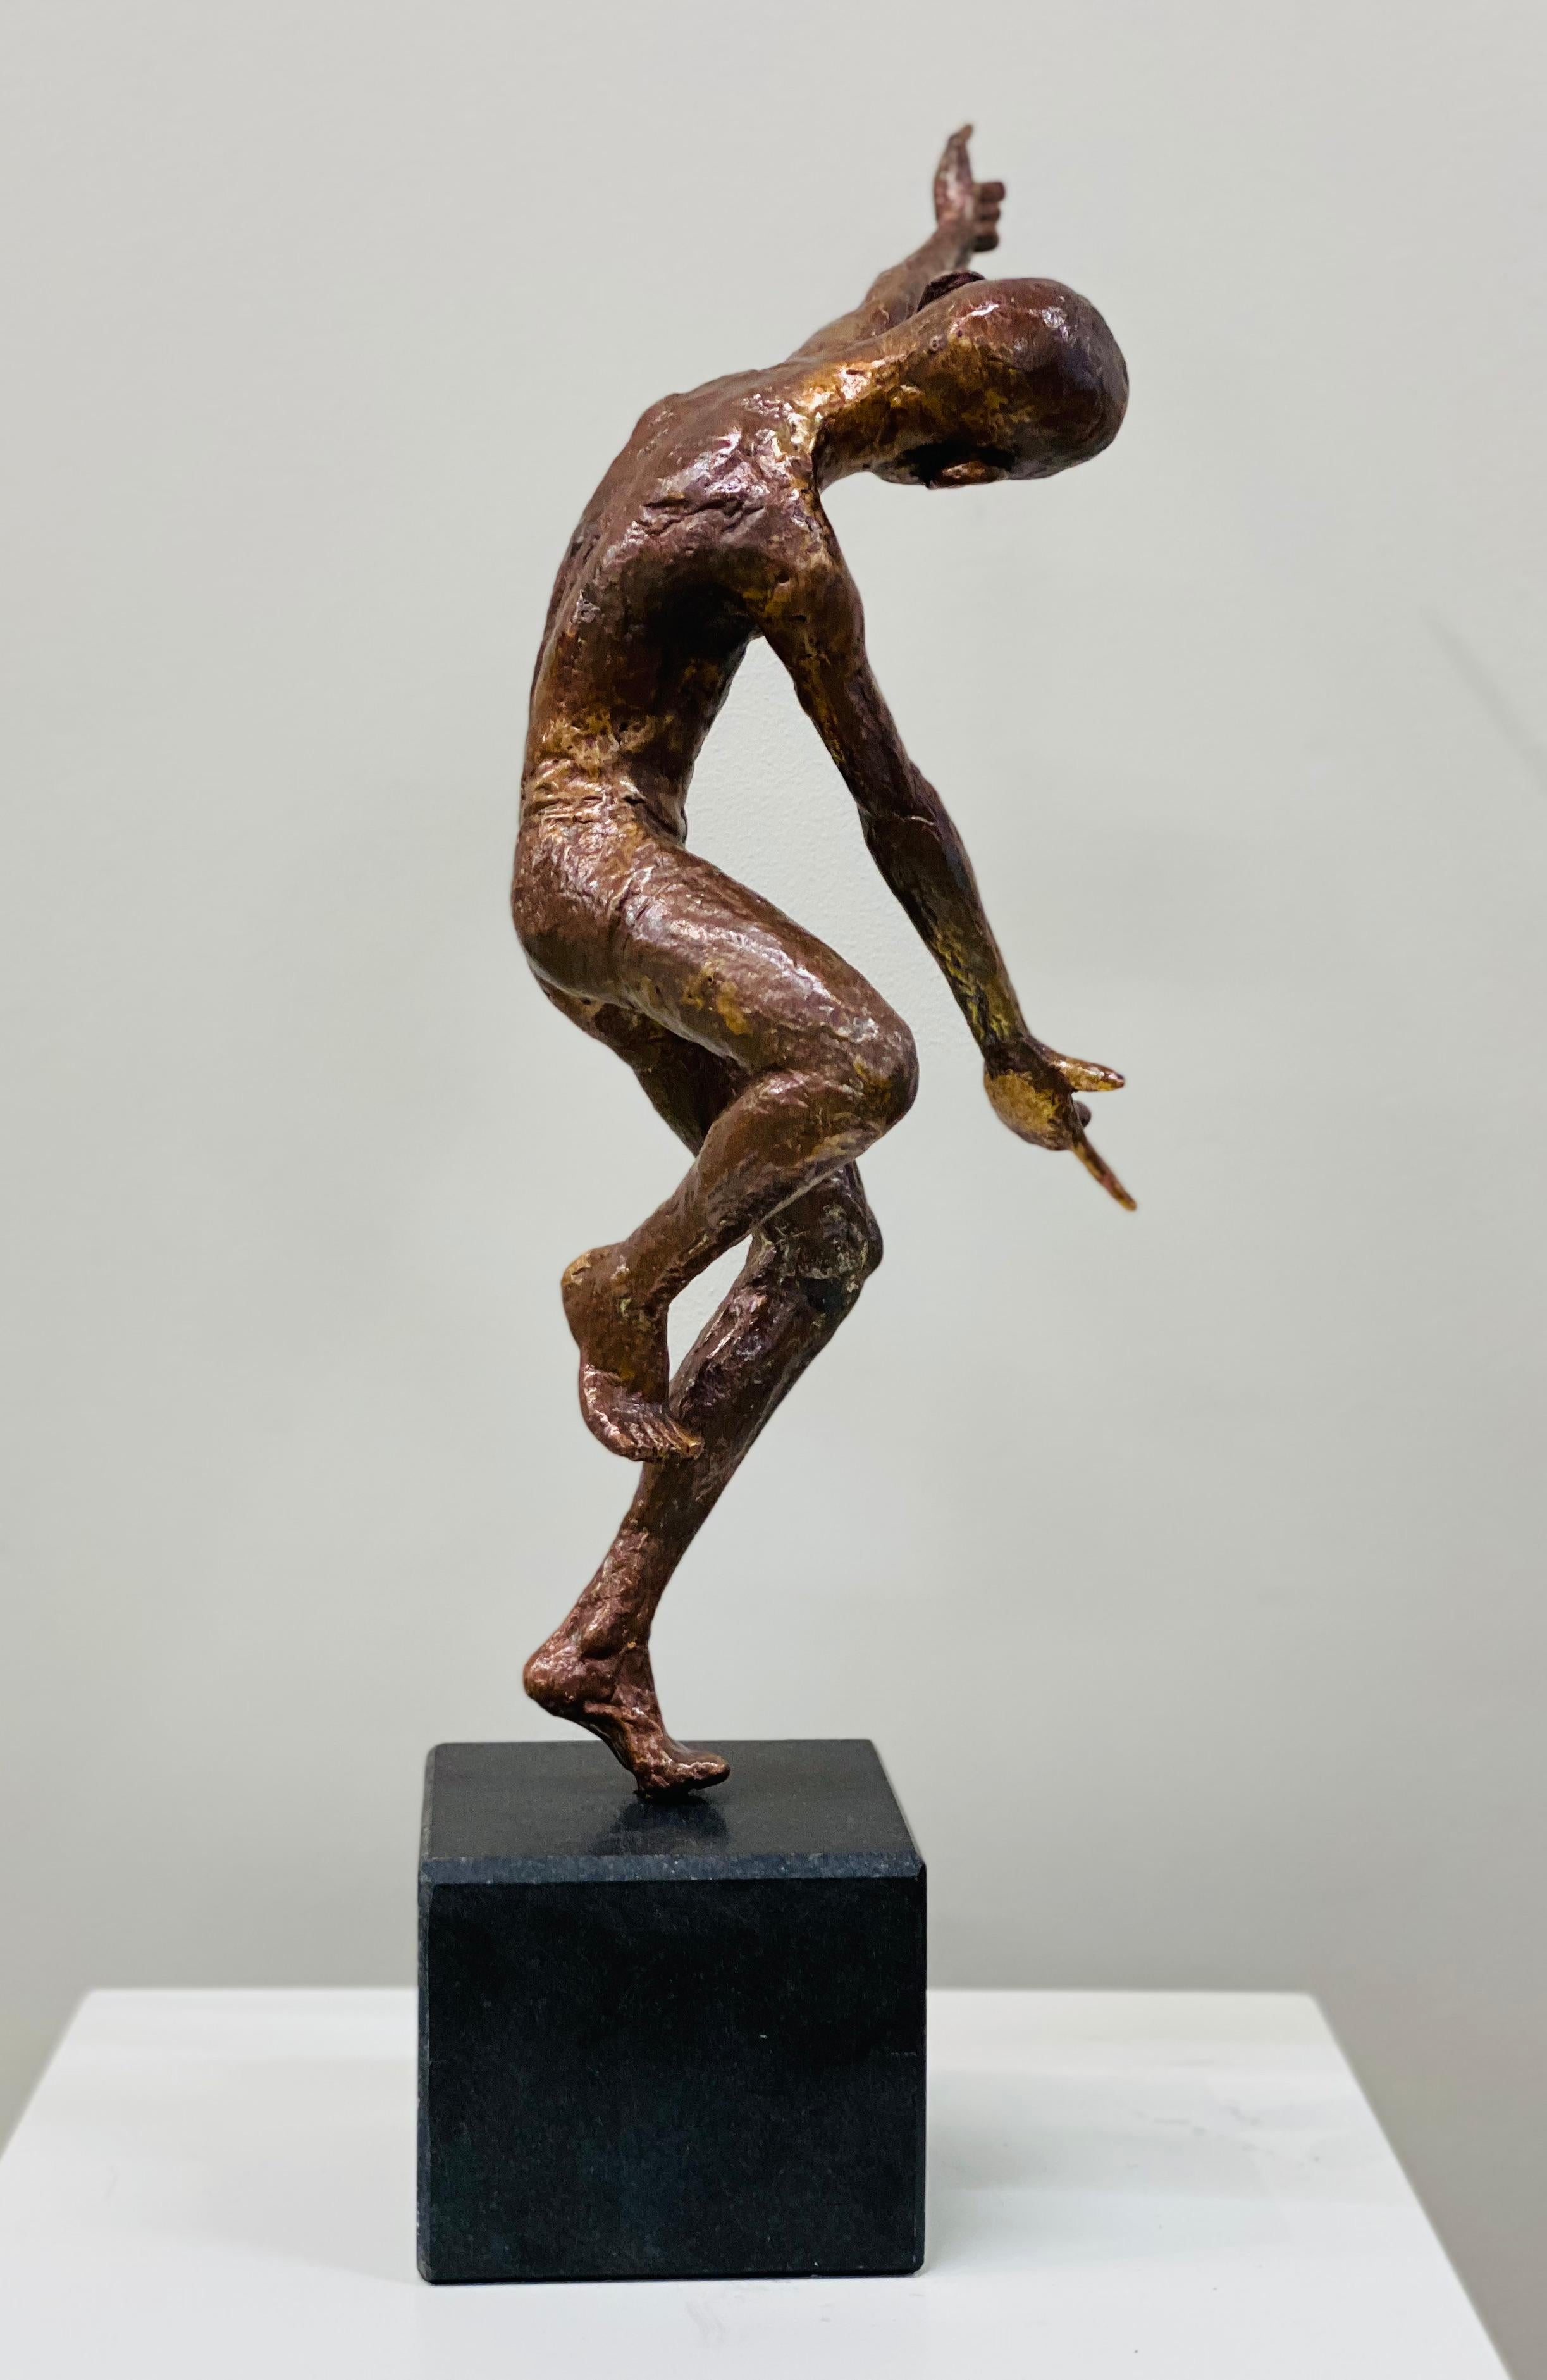 Diese Skulptur wurde vom niederländischen Künstler Martijn Soontiens aus Bronze gefertigt.   Die Skulptur steht auf einem Sockel aus Naturstein.

Bei seinen männlichen Tanzskulpturen geht es um Bewegung und Bewegung. Der Künstler Martijn Soontiens